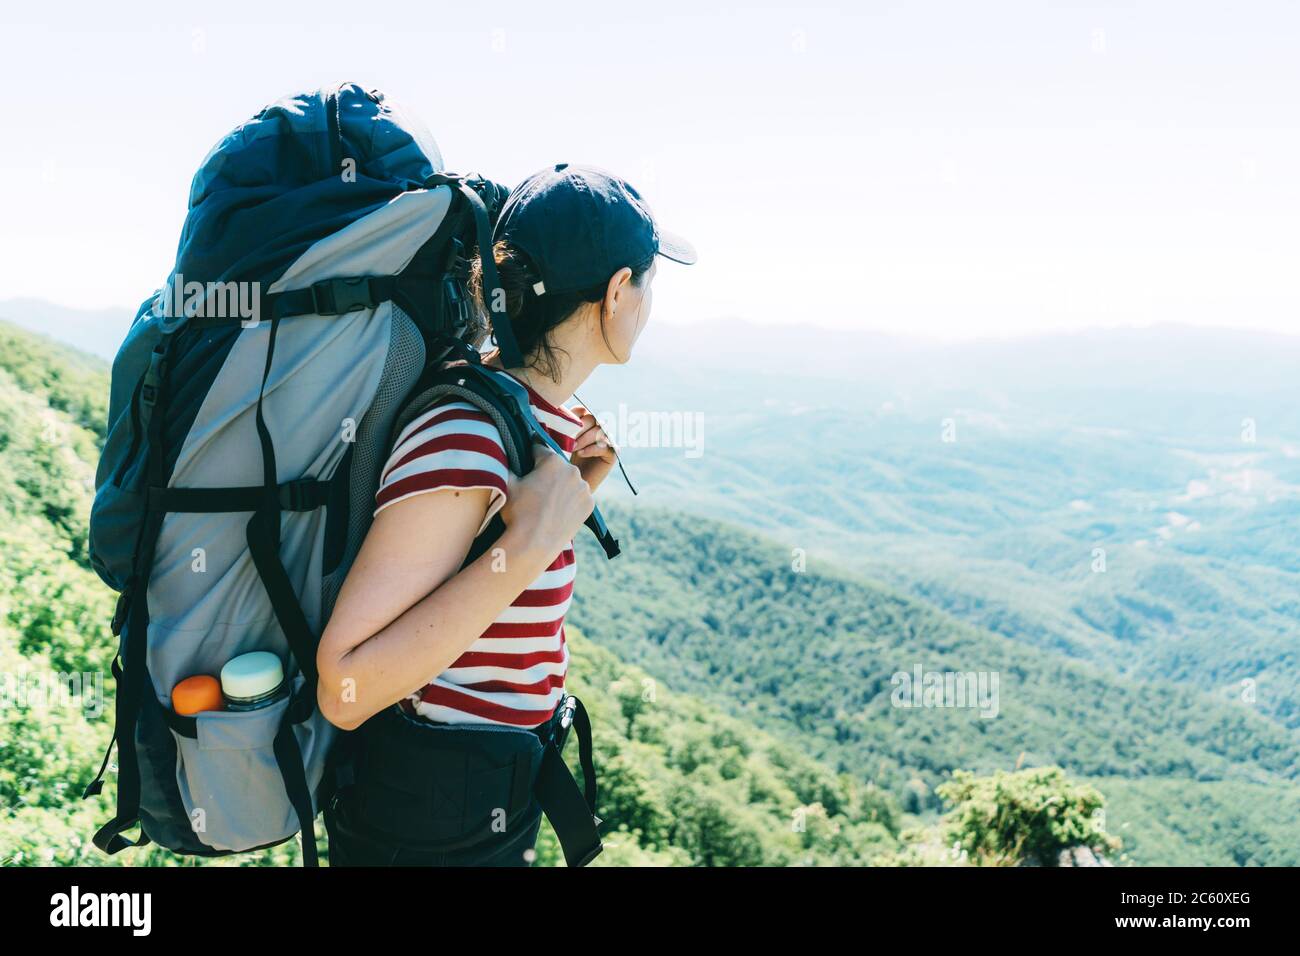 Une femme touriste avec un grand sac à dos de camping sur une expédition se tient sur le dessus et regarde le paysage. Banque D'Images